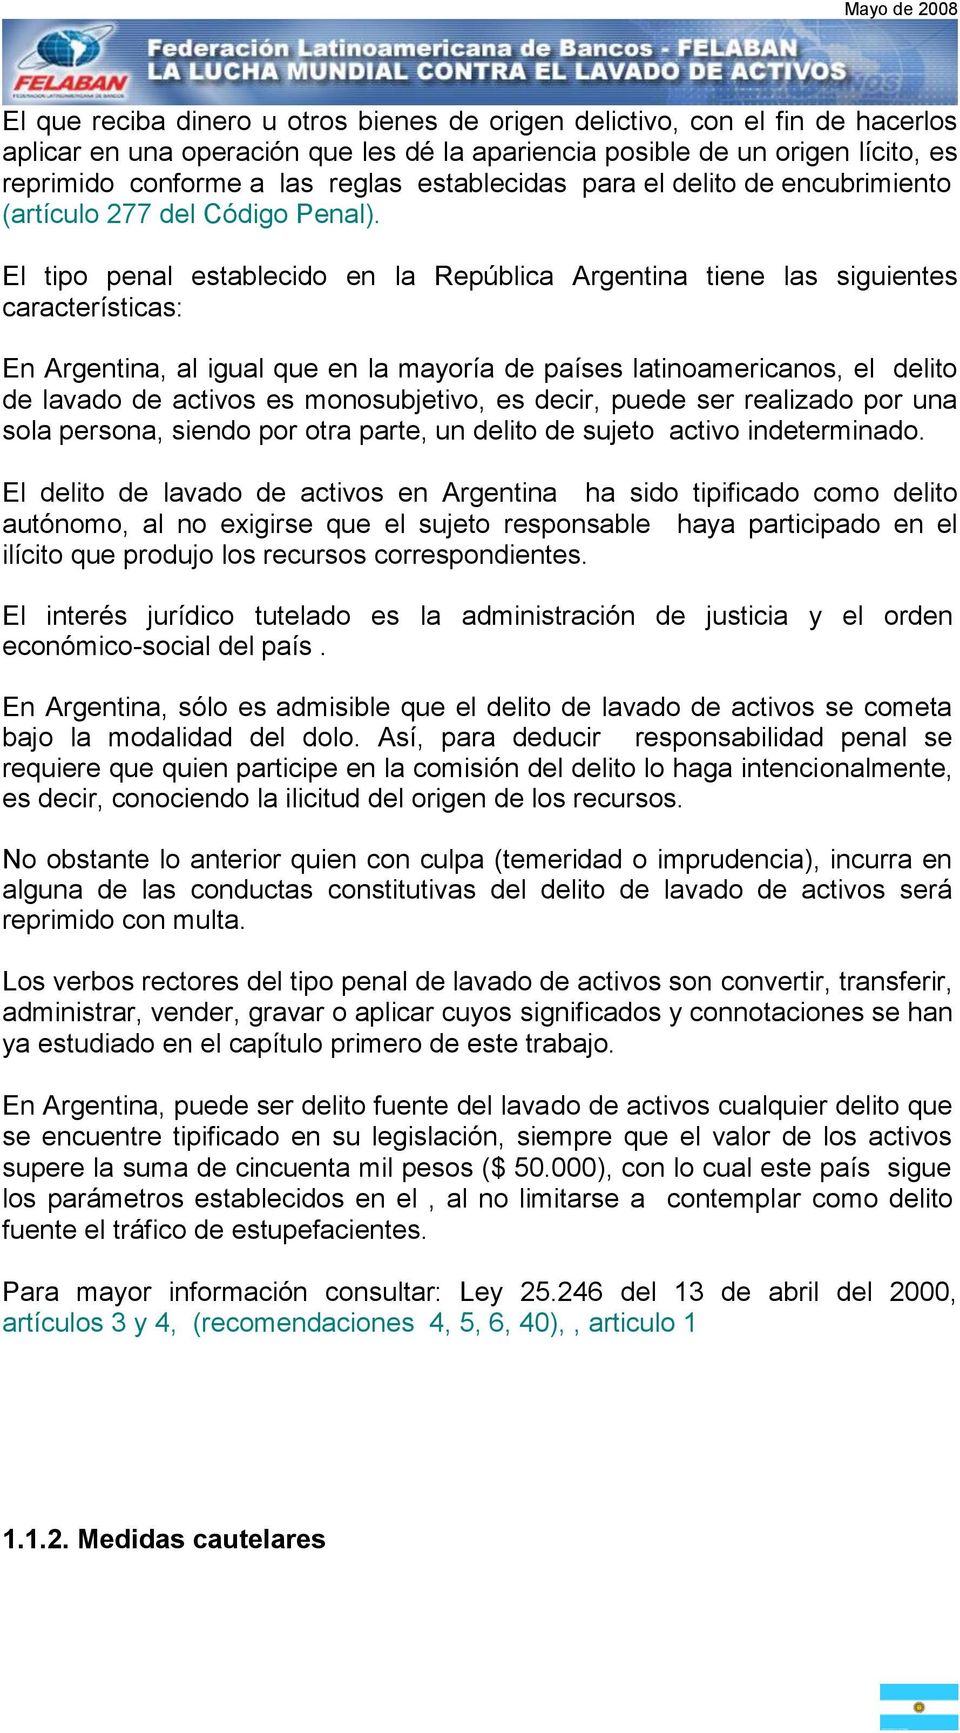 El tipo penal establecido en la República Argentina tiene las siguientes características: En Argentina, al igual que en la mayoría de países latinoamericanos, el delito de lavado de activos es